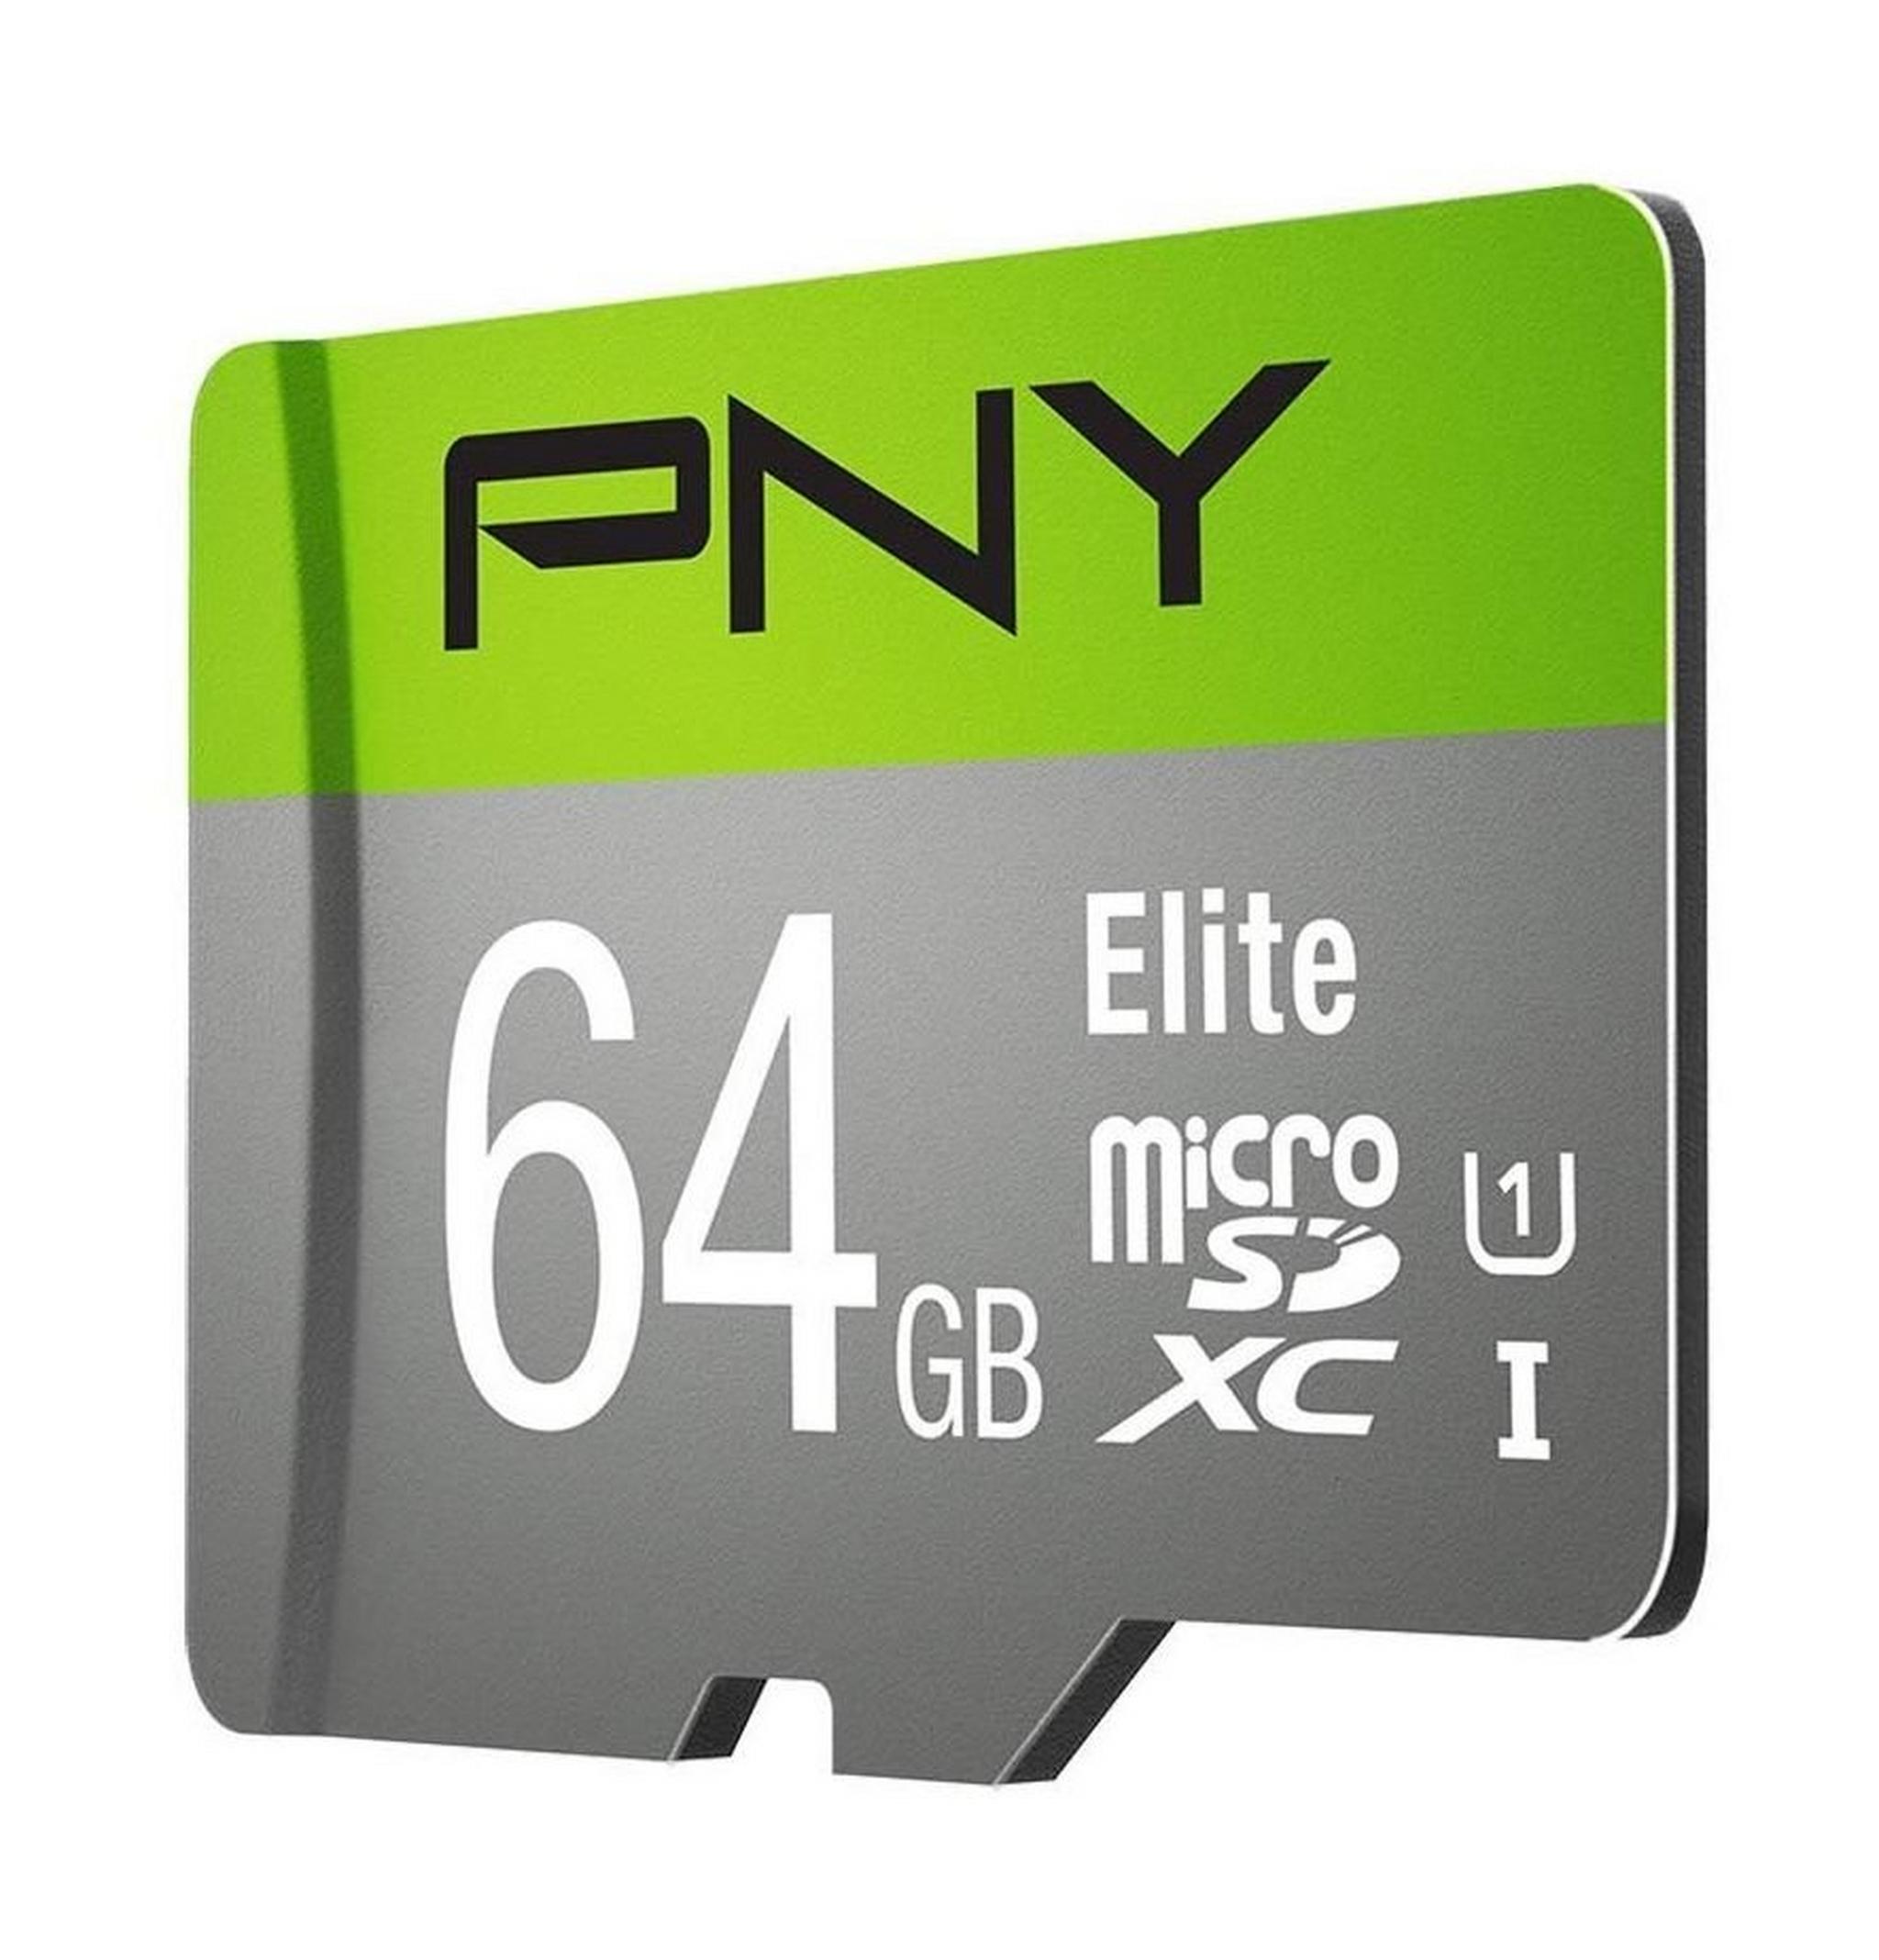 بطاقة ذاكرة PNY إليت مايكروSDXC سعة 64 جيجابايت من الفئة 10